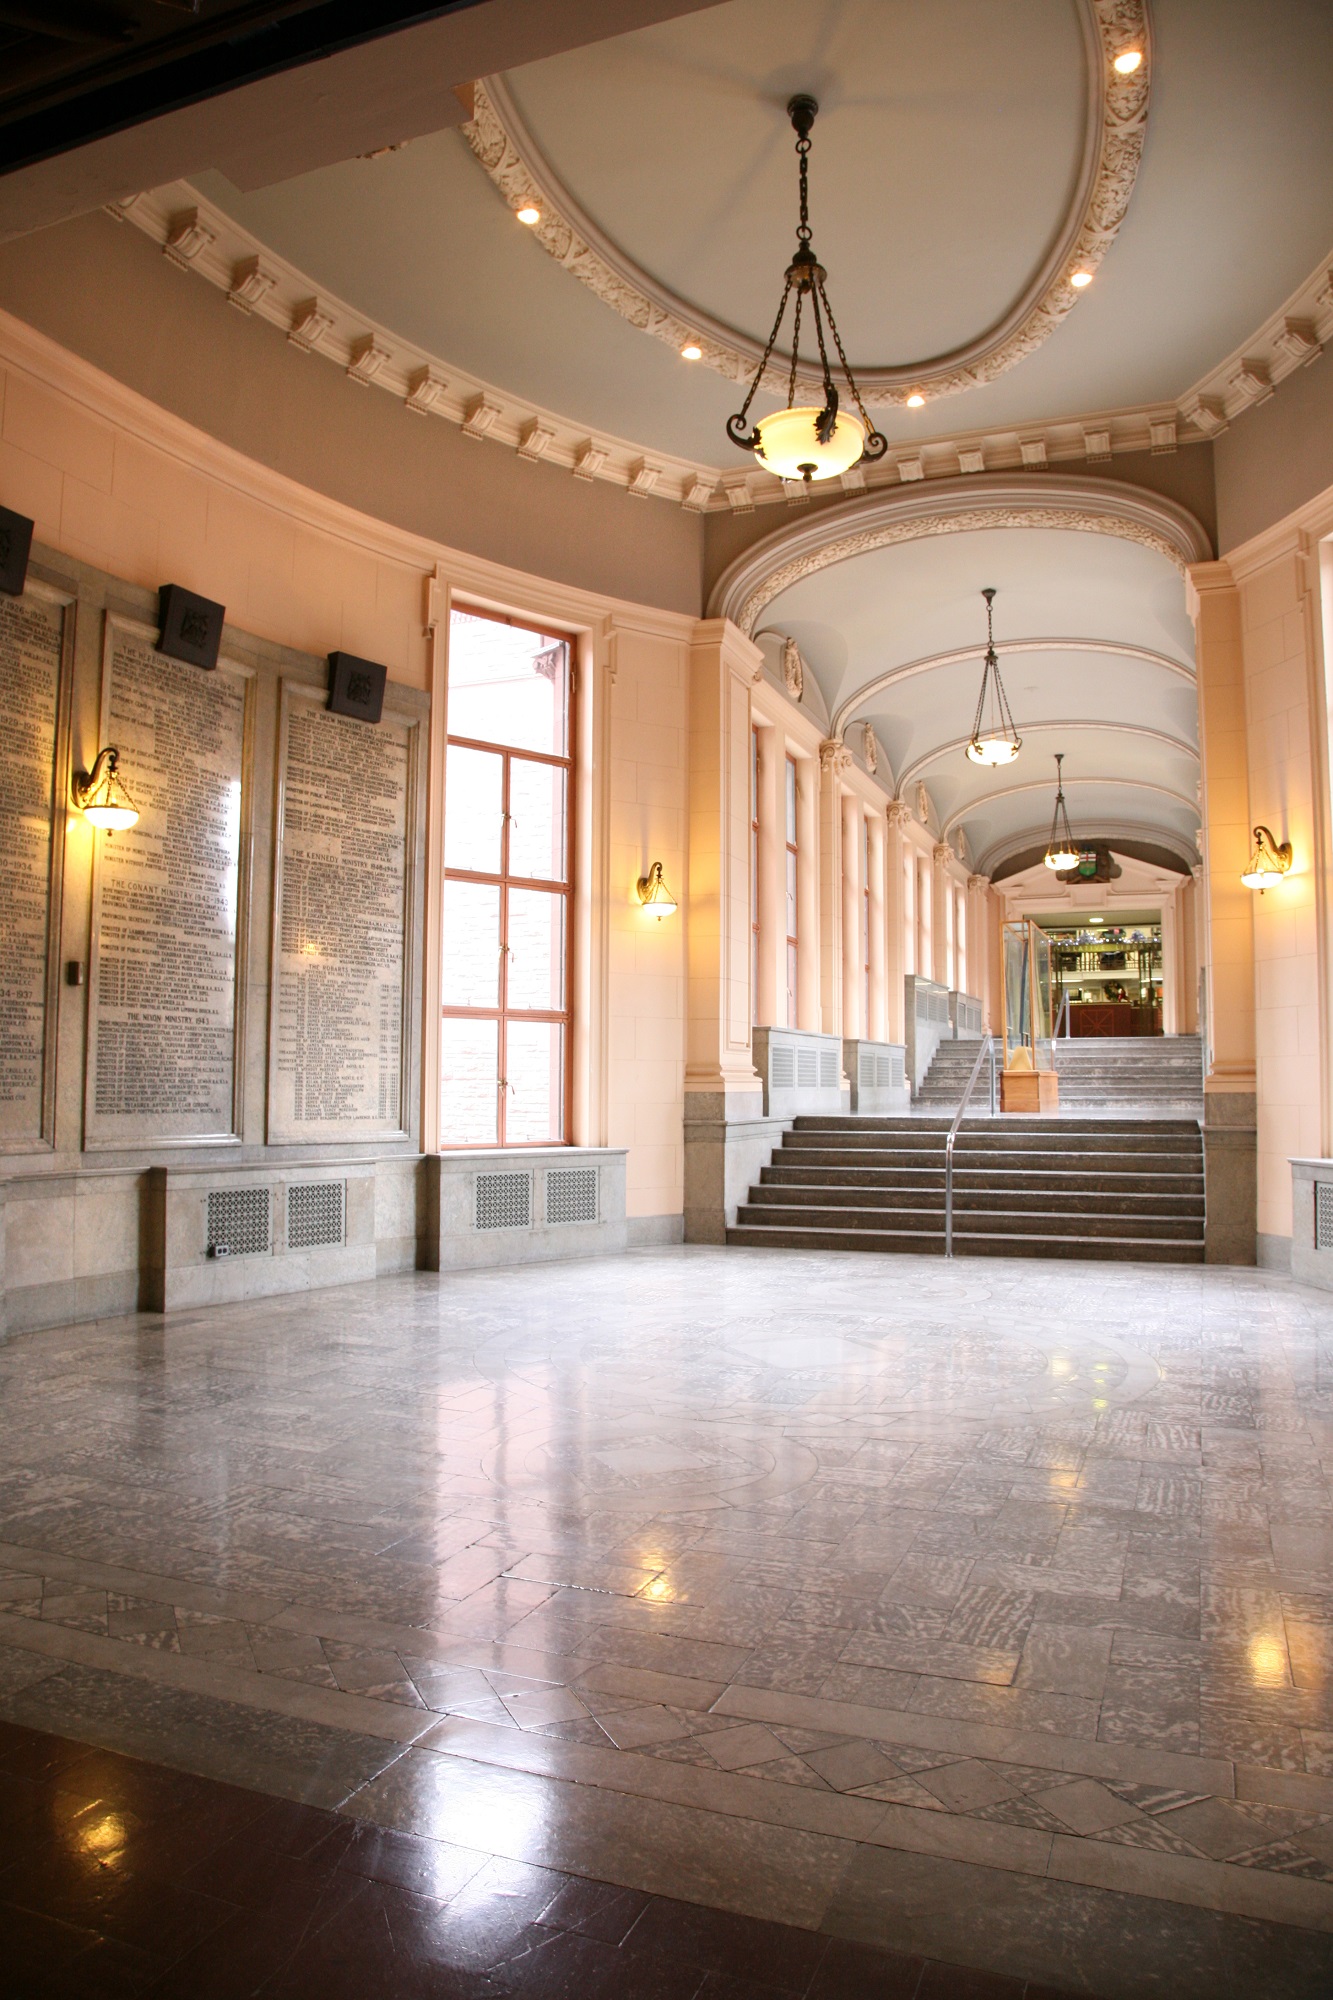 Picture of the Legislative Library Rotunda